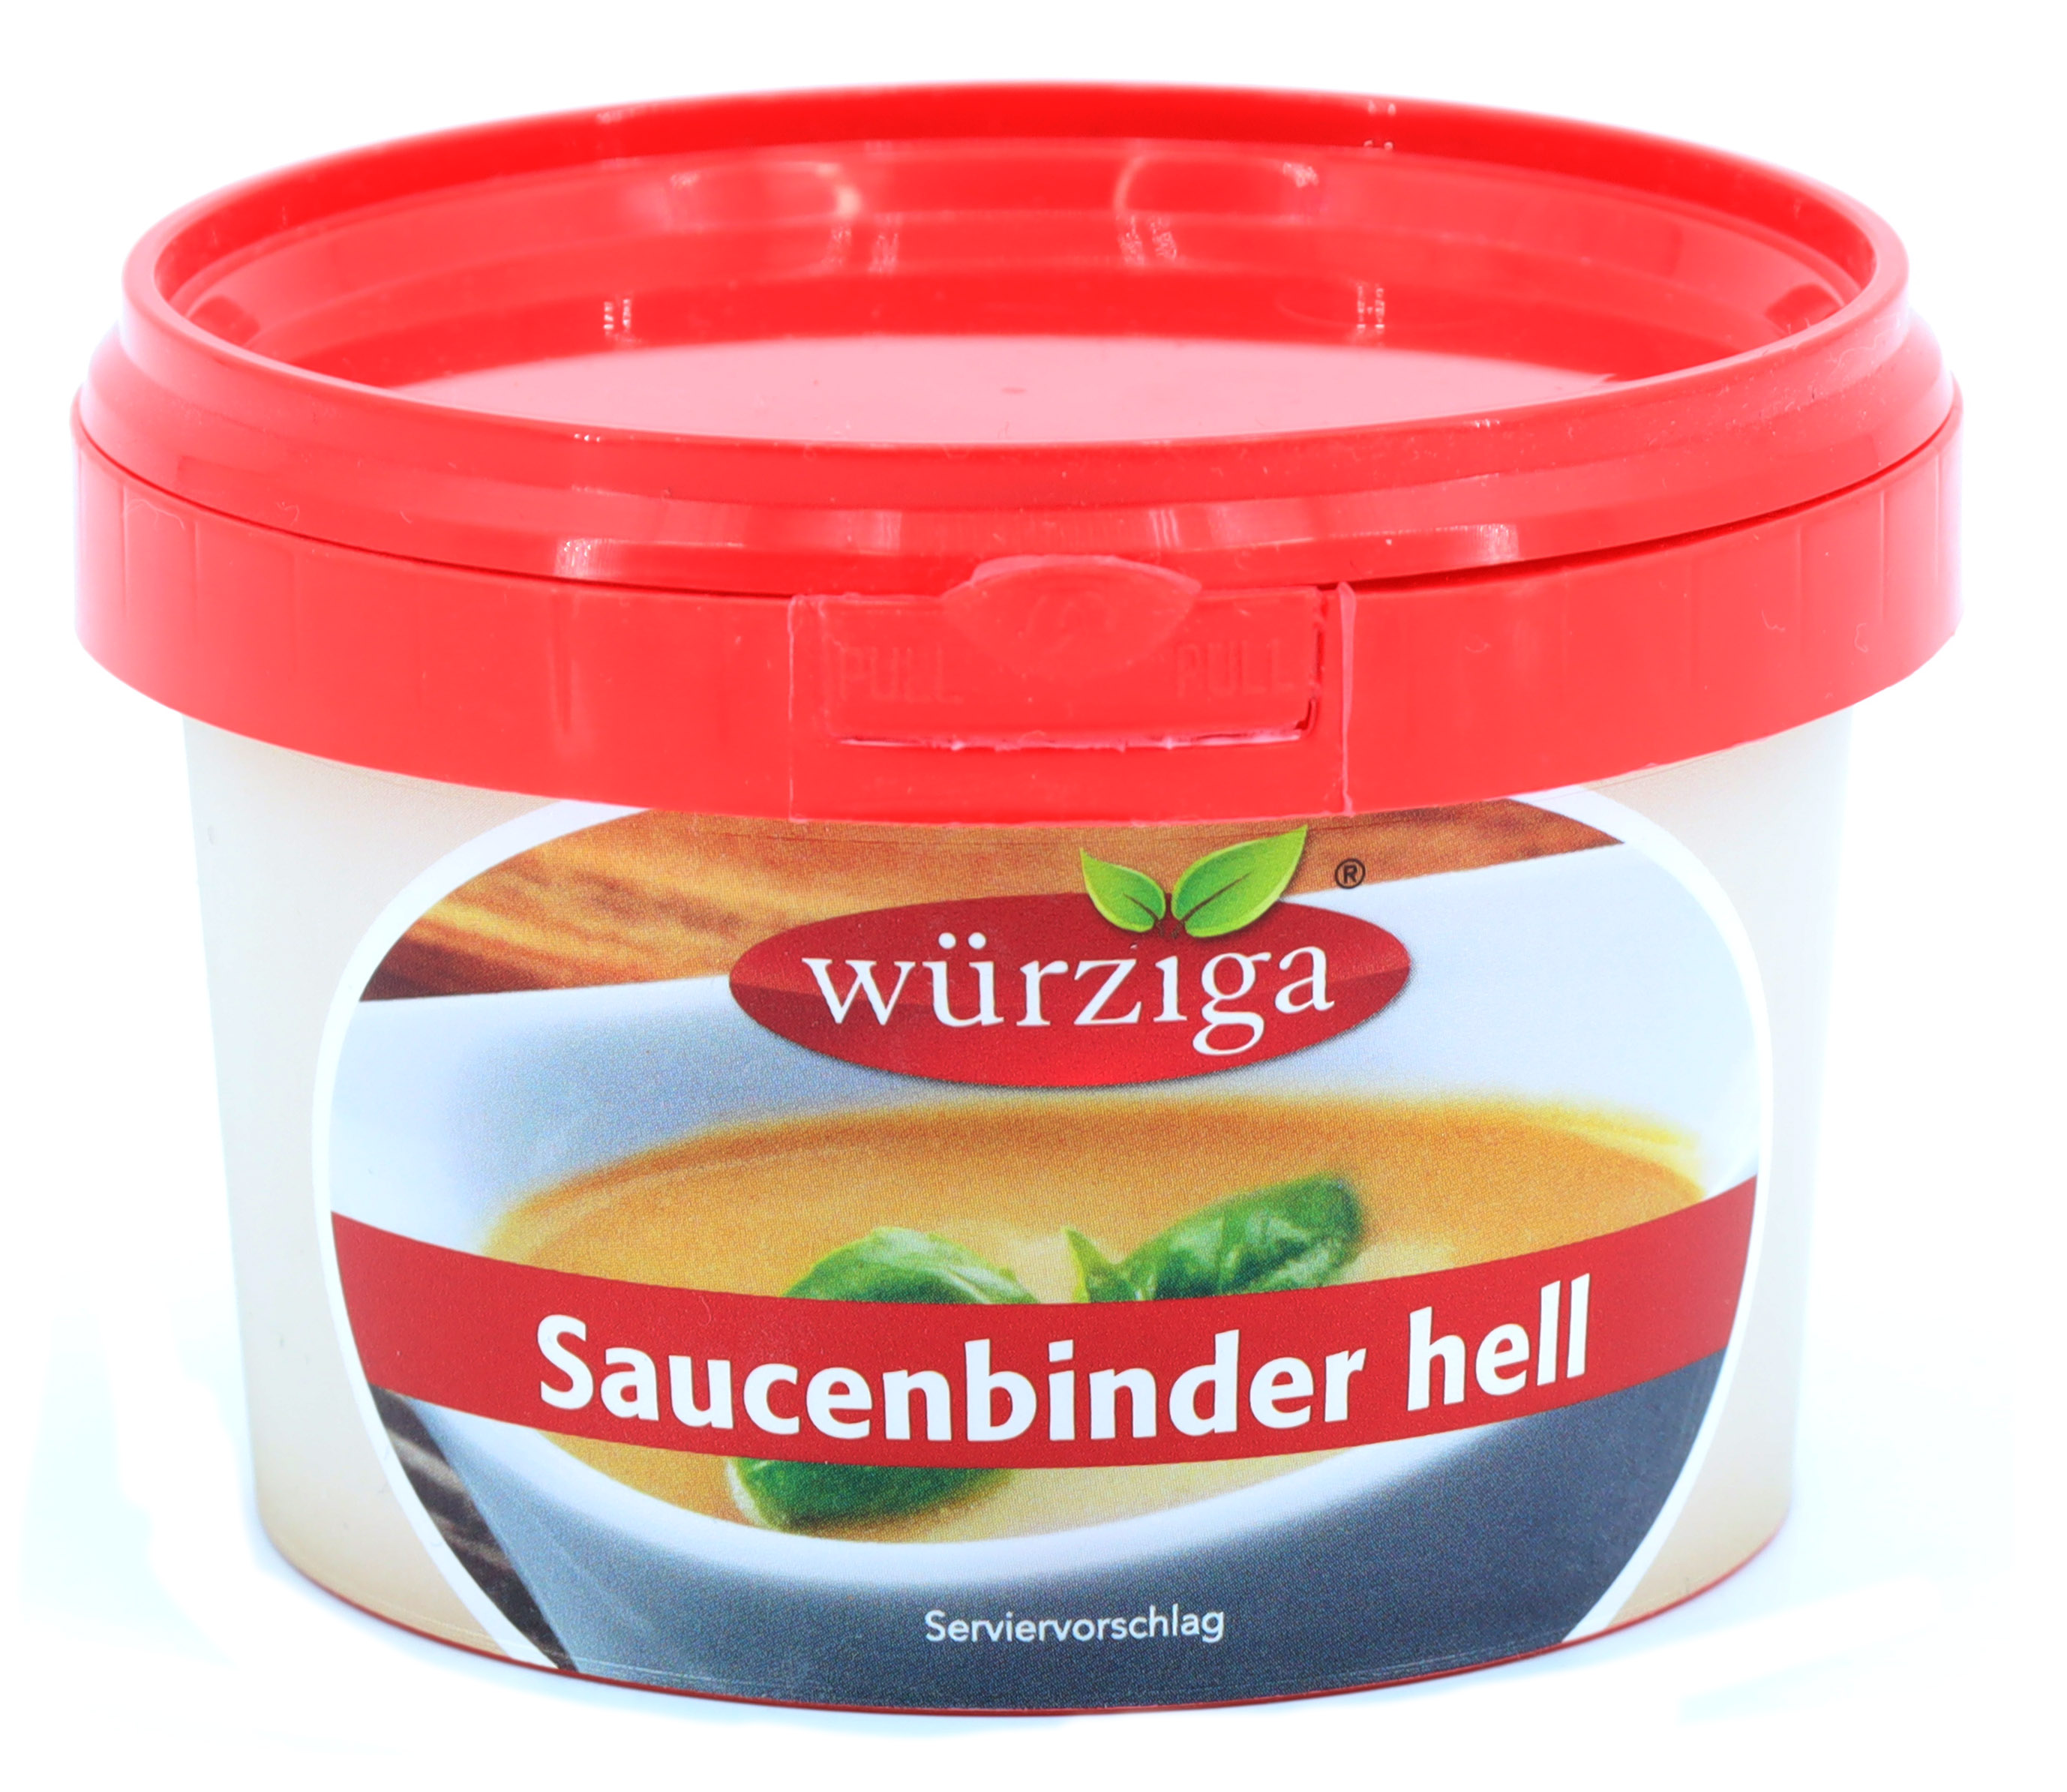 *Würziga Saucenbinder hell 130g PET Becher